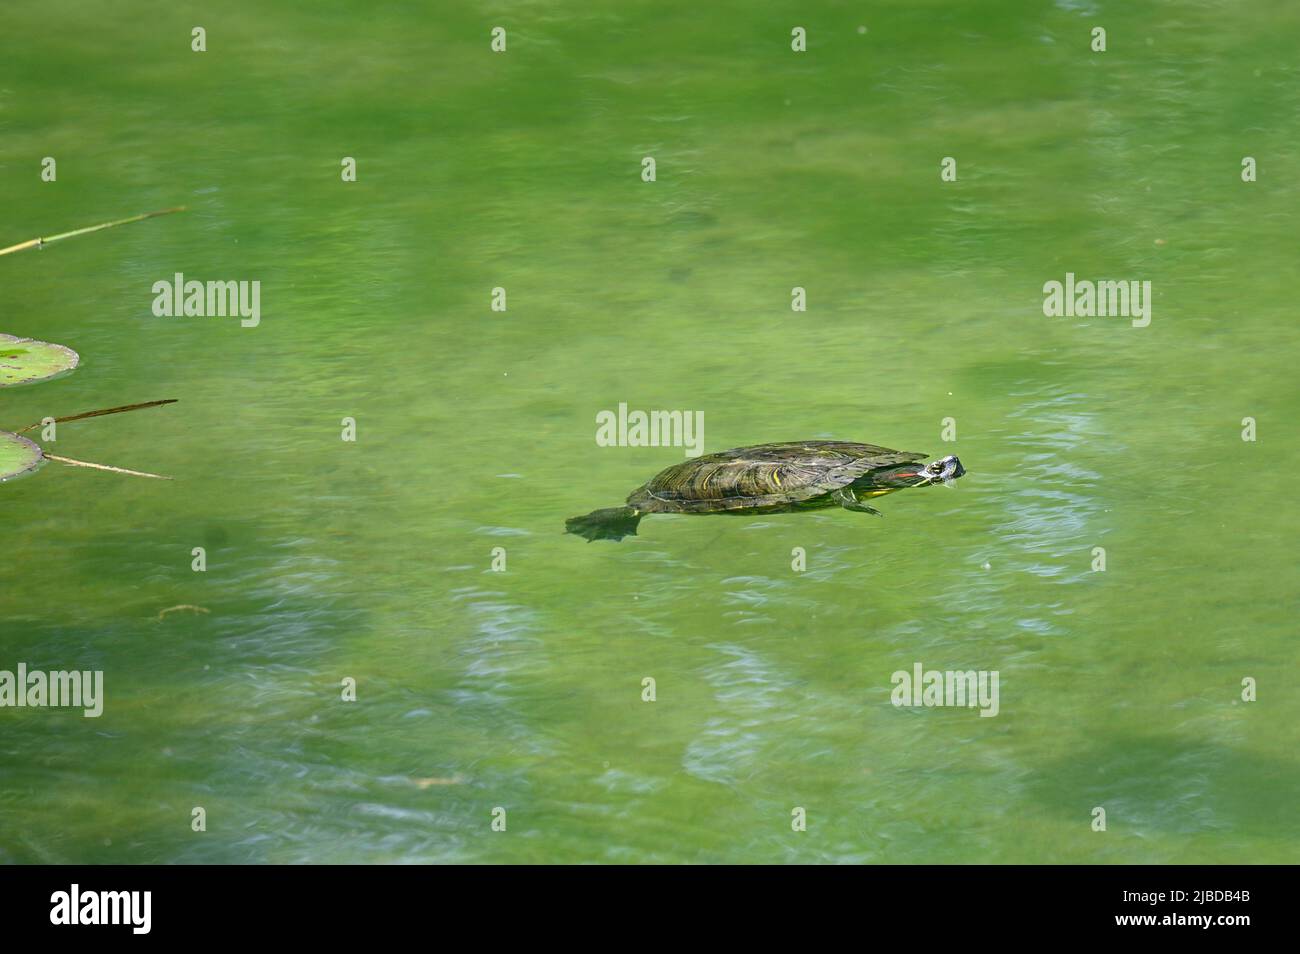 Vienna, Austria. Scivolo dalle orecchie rosse (Trachemys scripta elegans) che nuota nel parco acquatico Floridsdorf Foto Stock